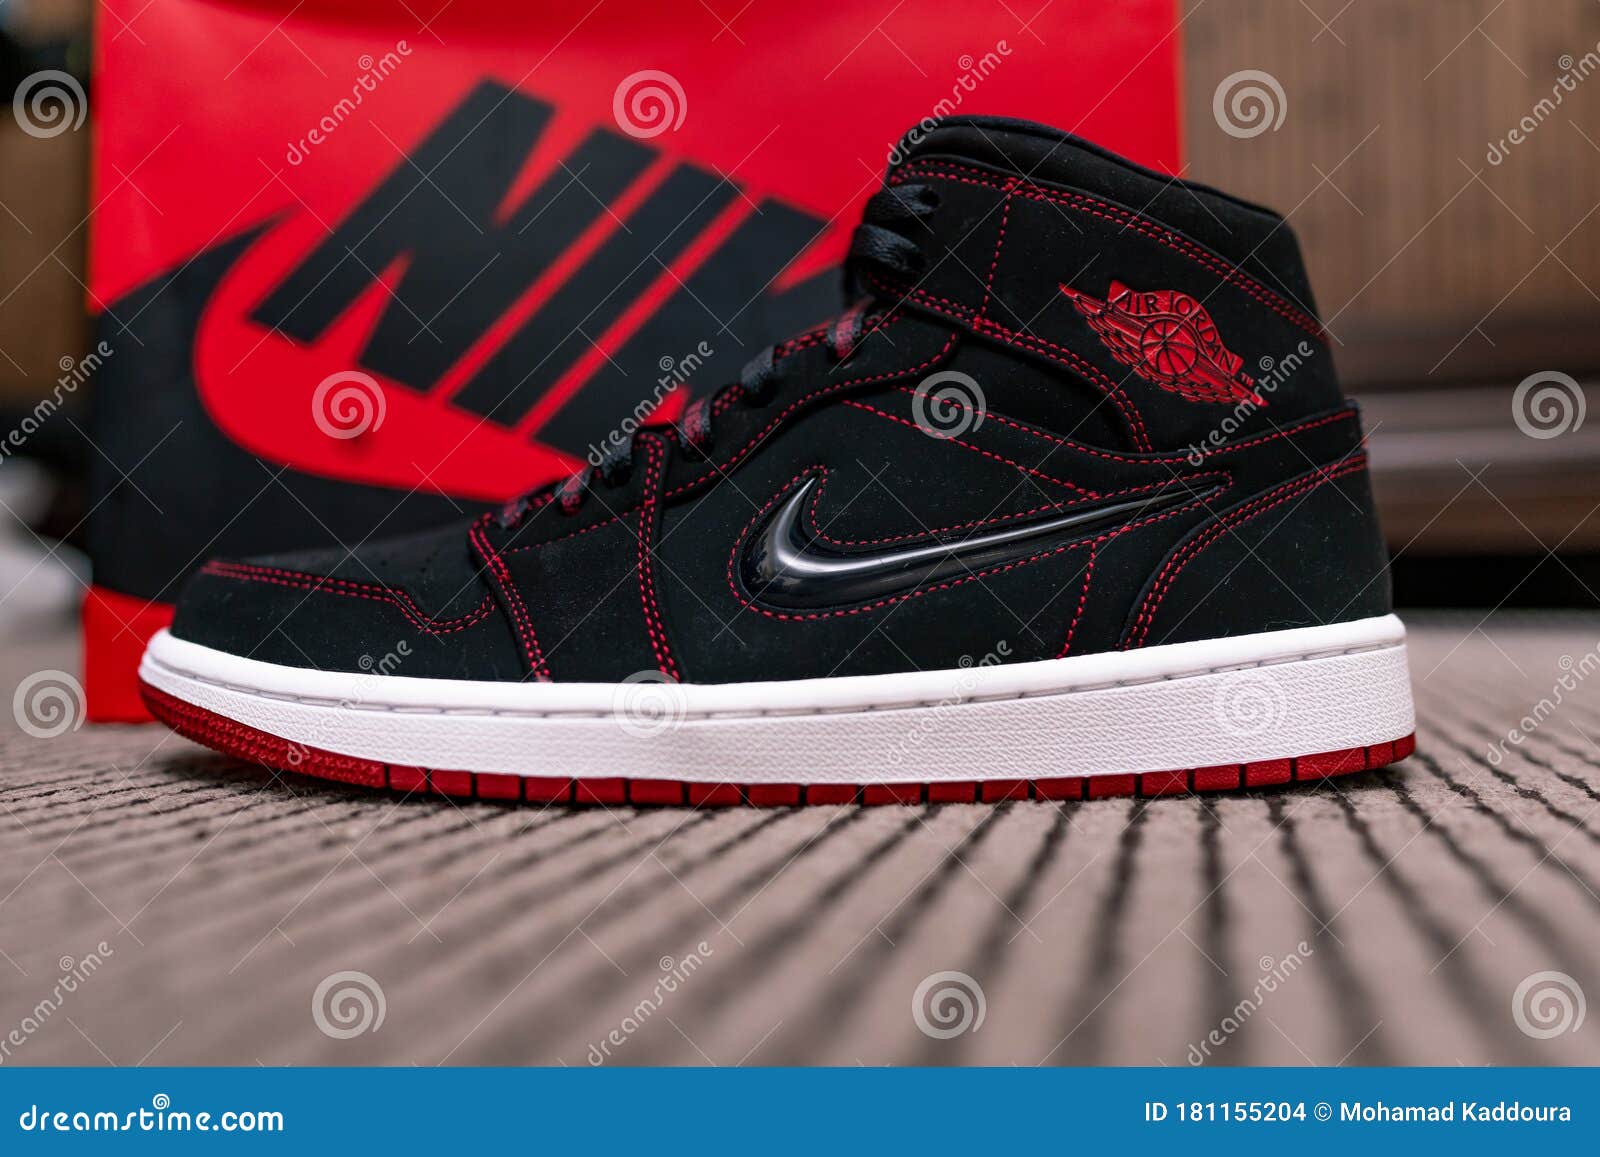 Nike Jordan Rojo Negro Y Blanco 1 23 Zapatillas De Baloncesto Cultura Puntos Michael Jordan Chicago Toros Imagen de archivo editorial - Imagen de miguel, bombo: 181155204